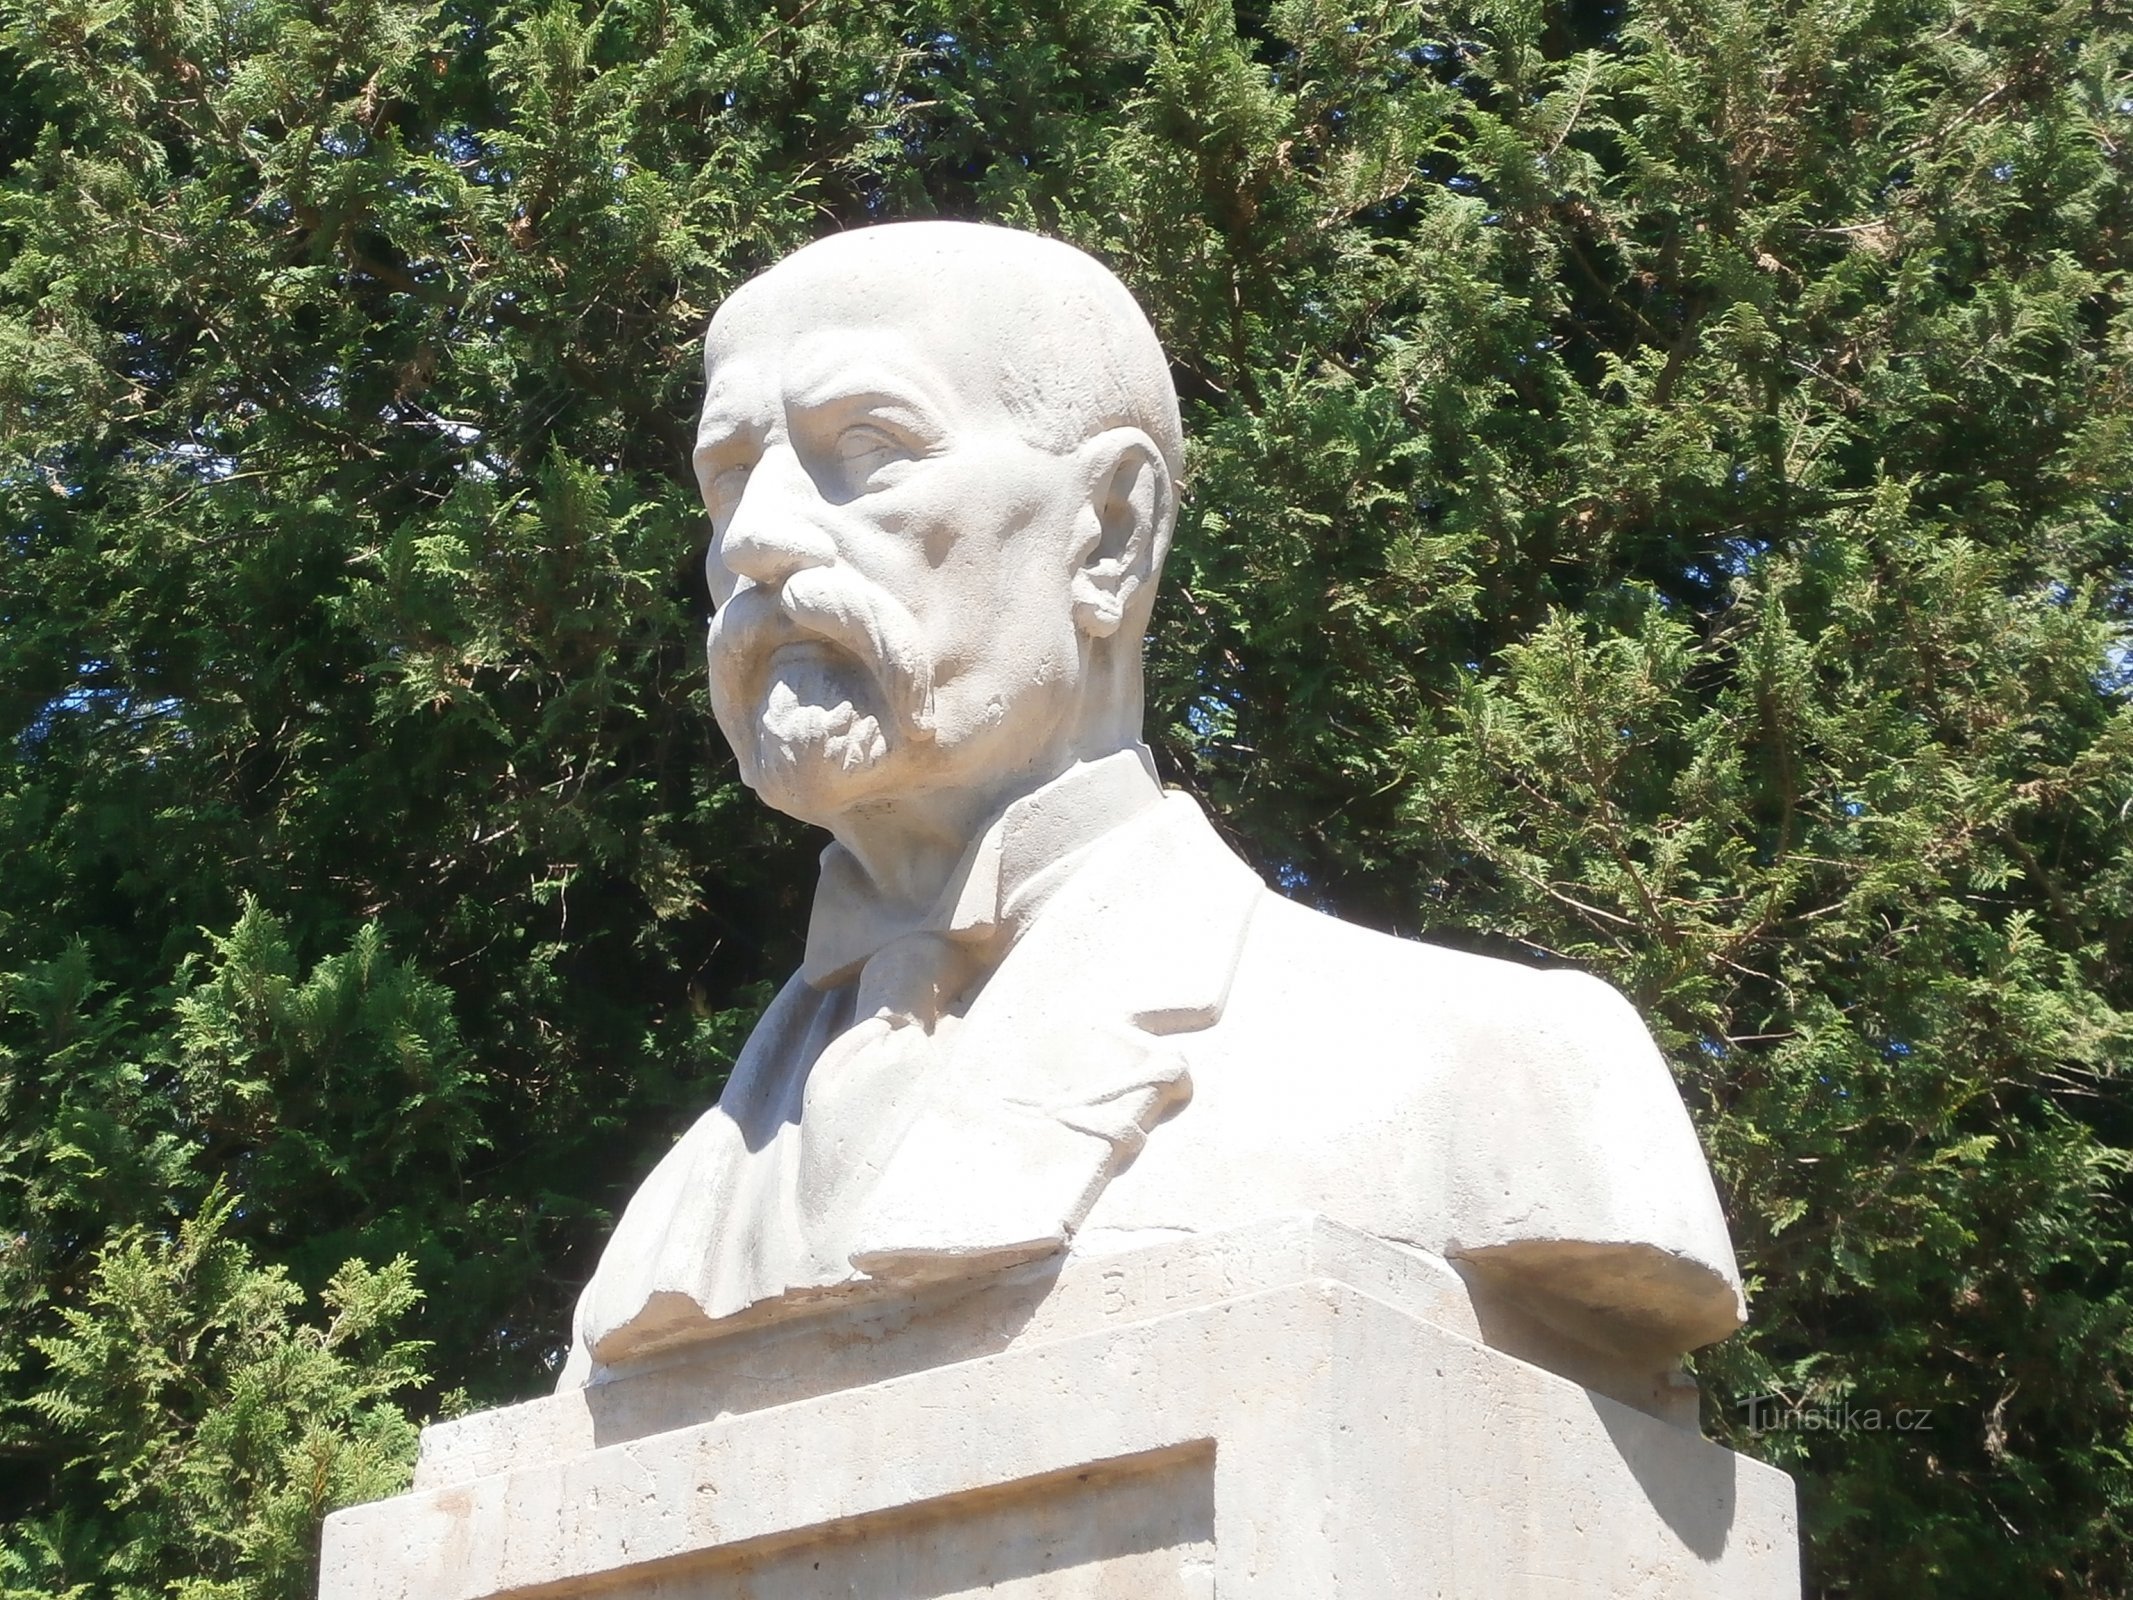 Busto de TG Masaryk no monumento aos mortos na Primeira Guerra Mundial (Havlovice)